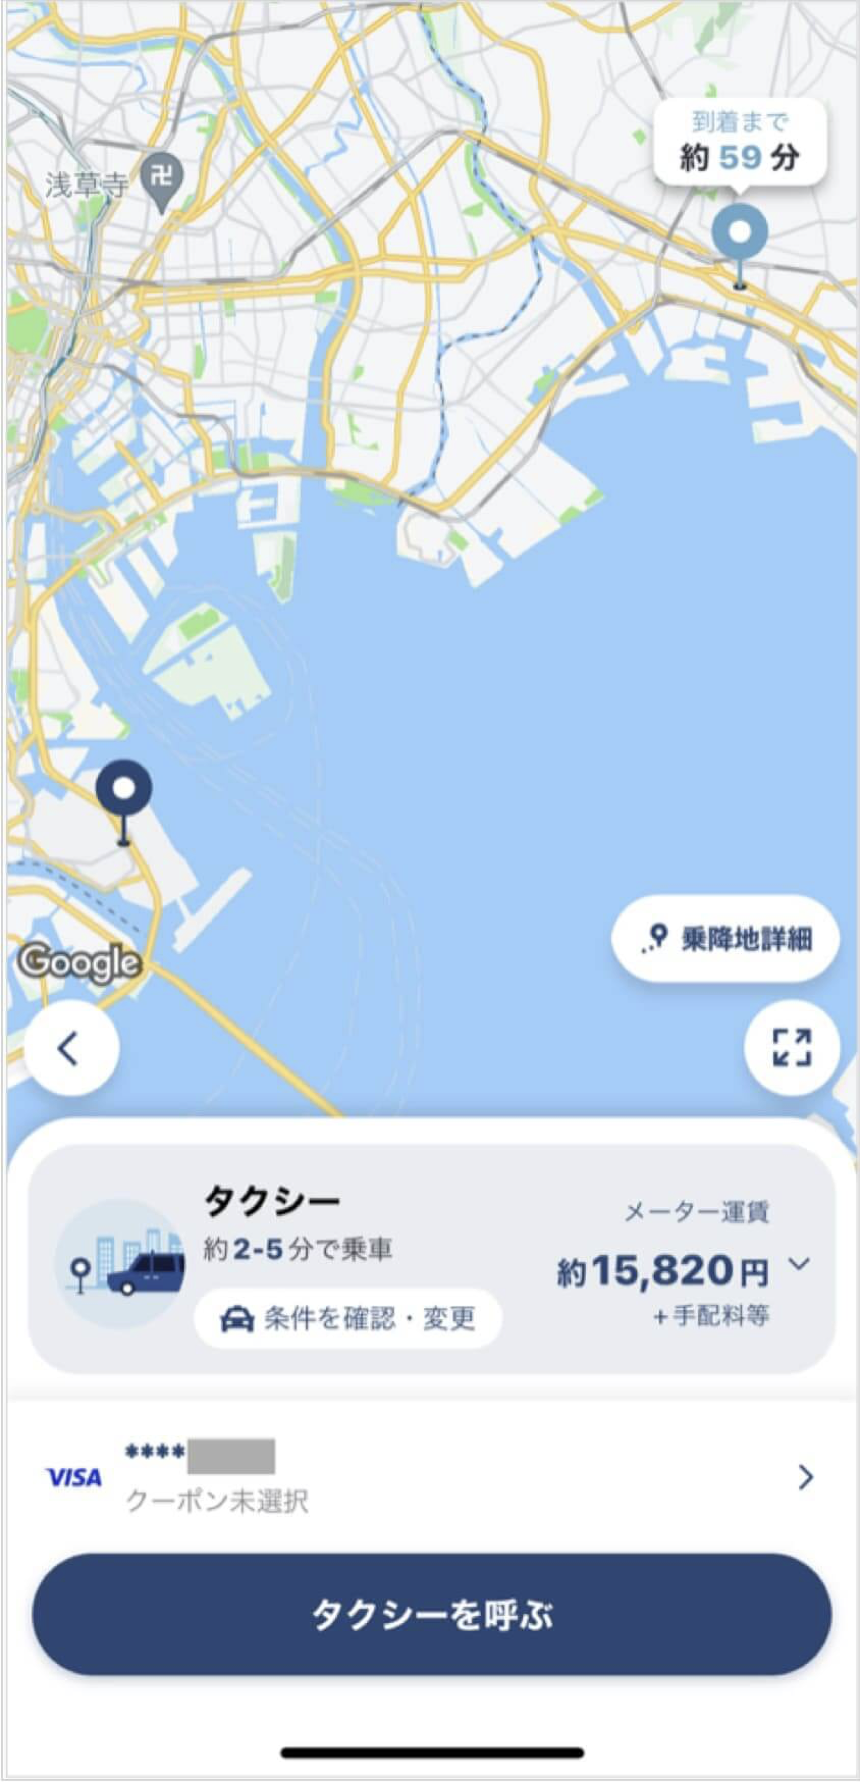 羽田空港から船橋までのタクシー料金・所要時間まとめ